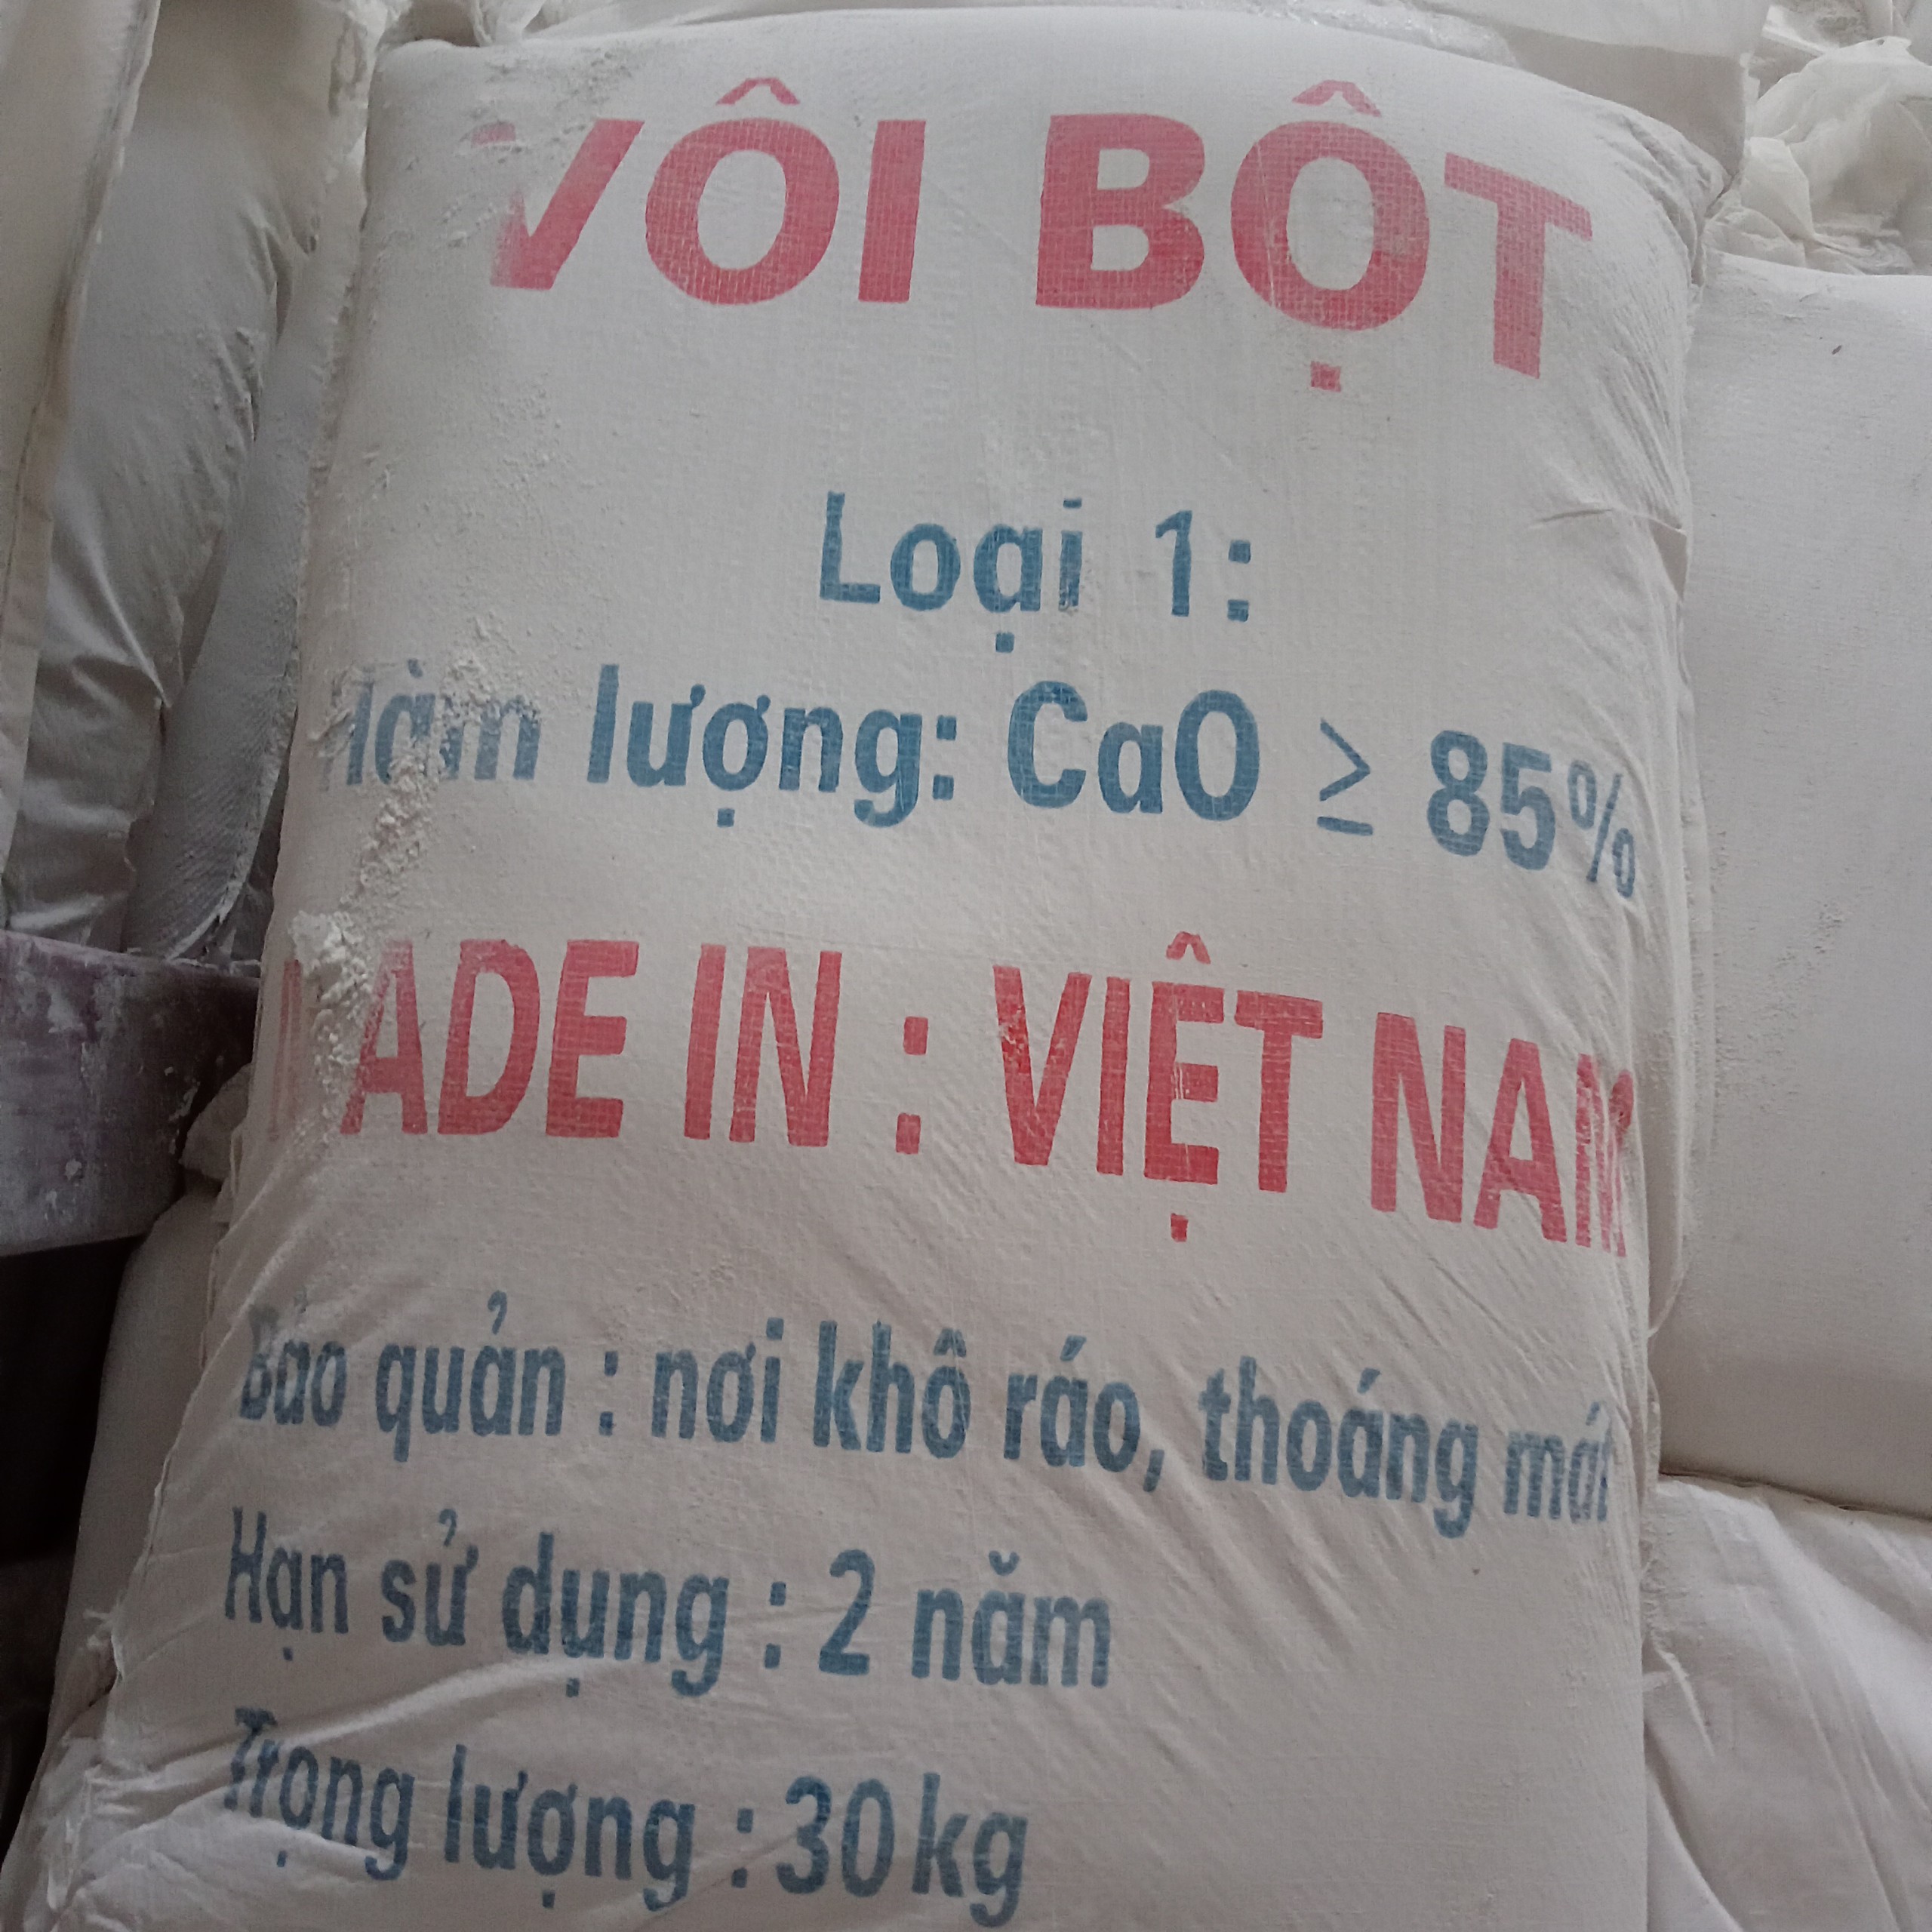 Vôi bột made in Việt Nam